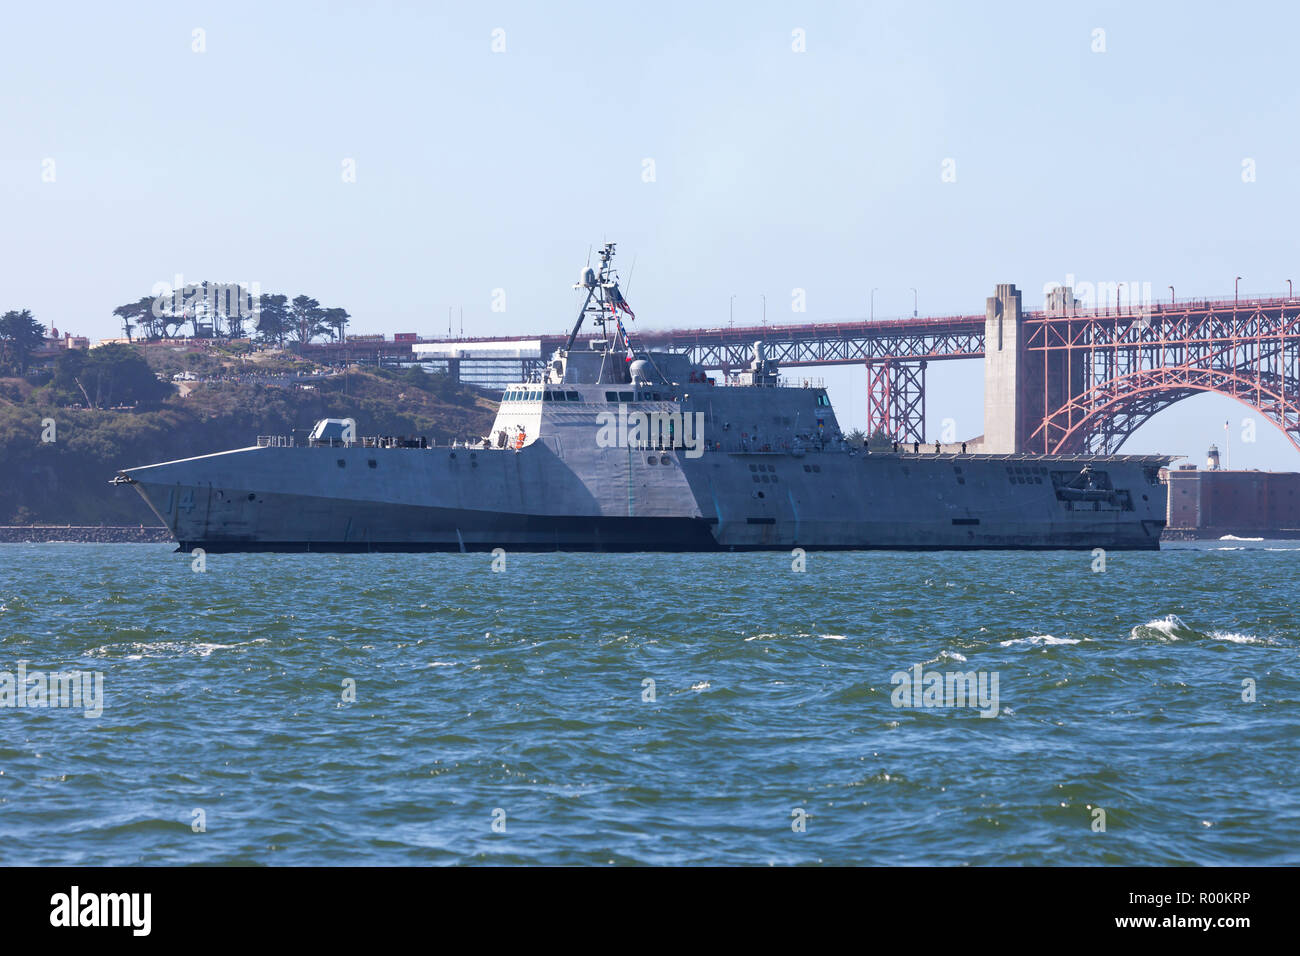 L'indépendance de combat littoral classe USS Manchester (LCS 14) sur la baie de San Francisco. Banque D'Images